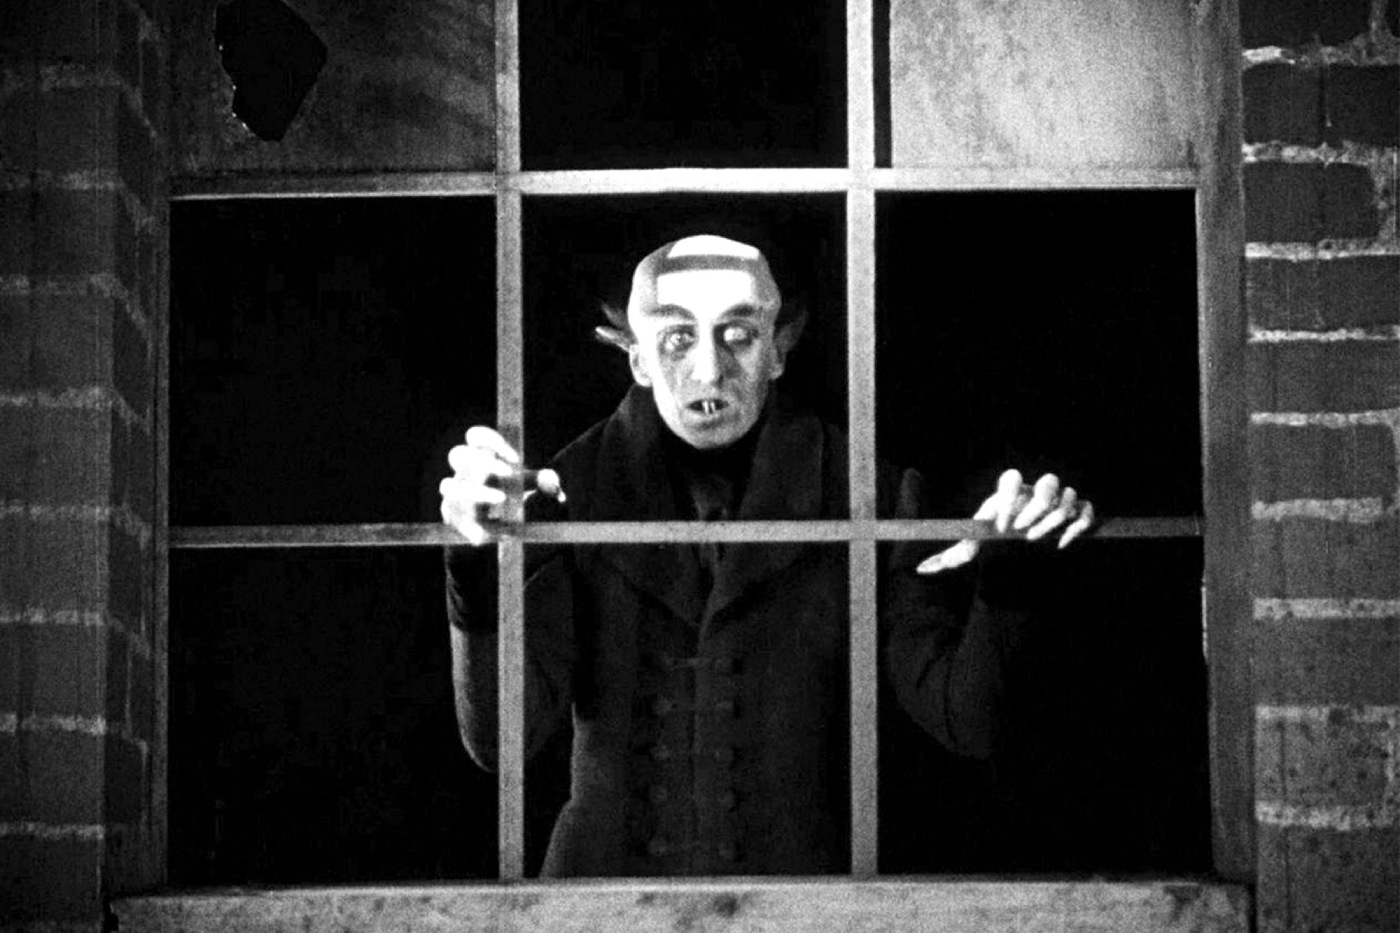 Max Schreck as Count Orlok in Nosferatu (1922)